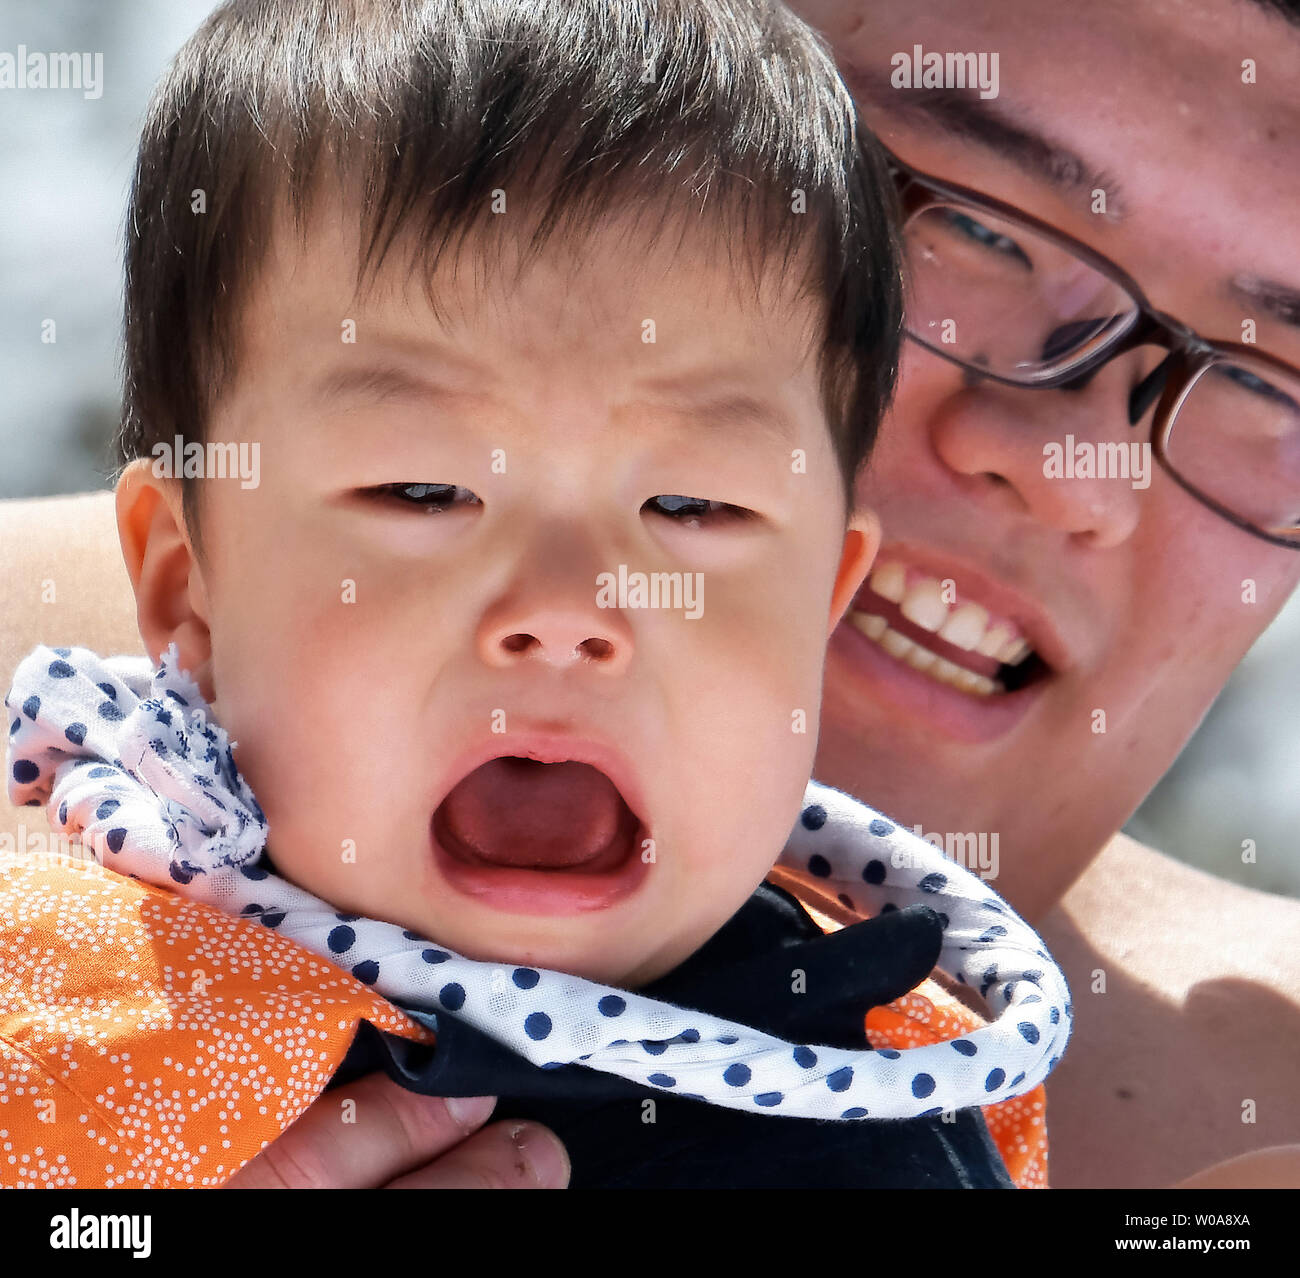 Japon : le concours des bébés qui pleurent 